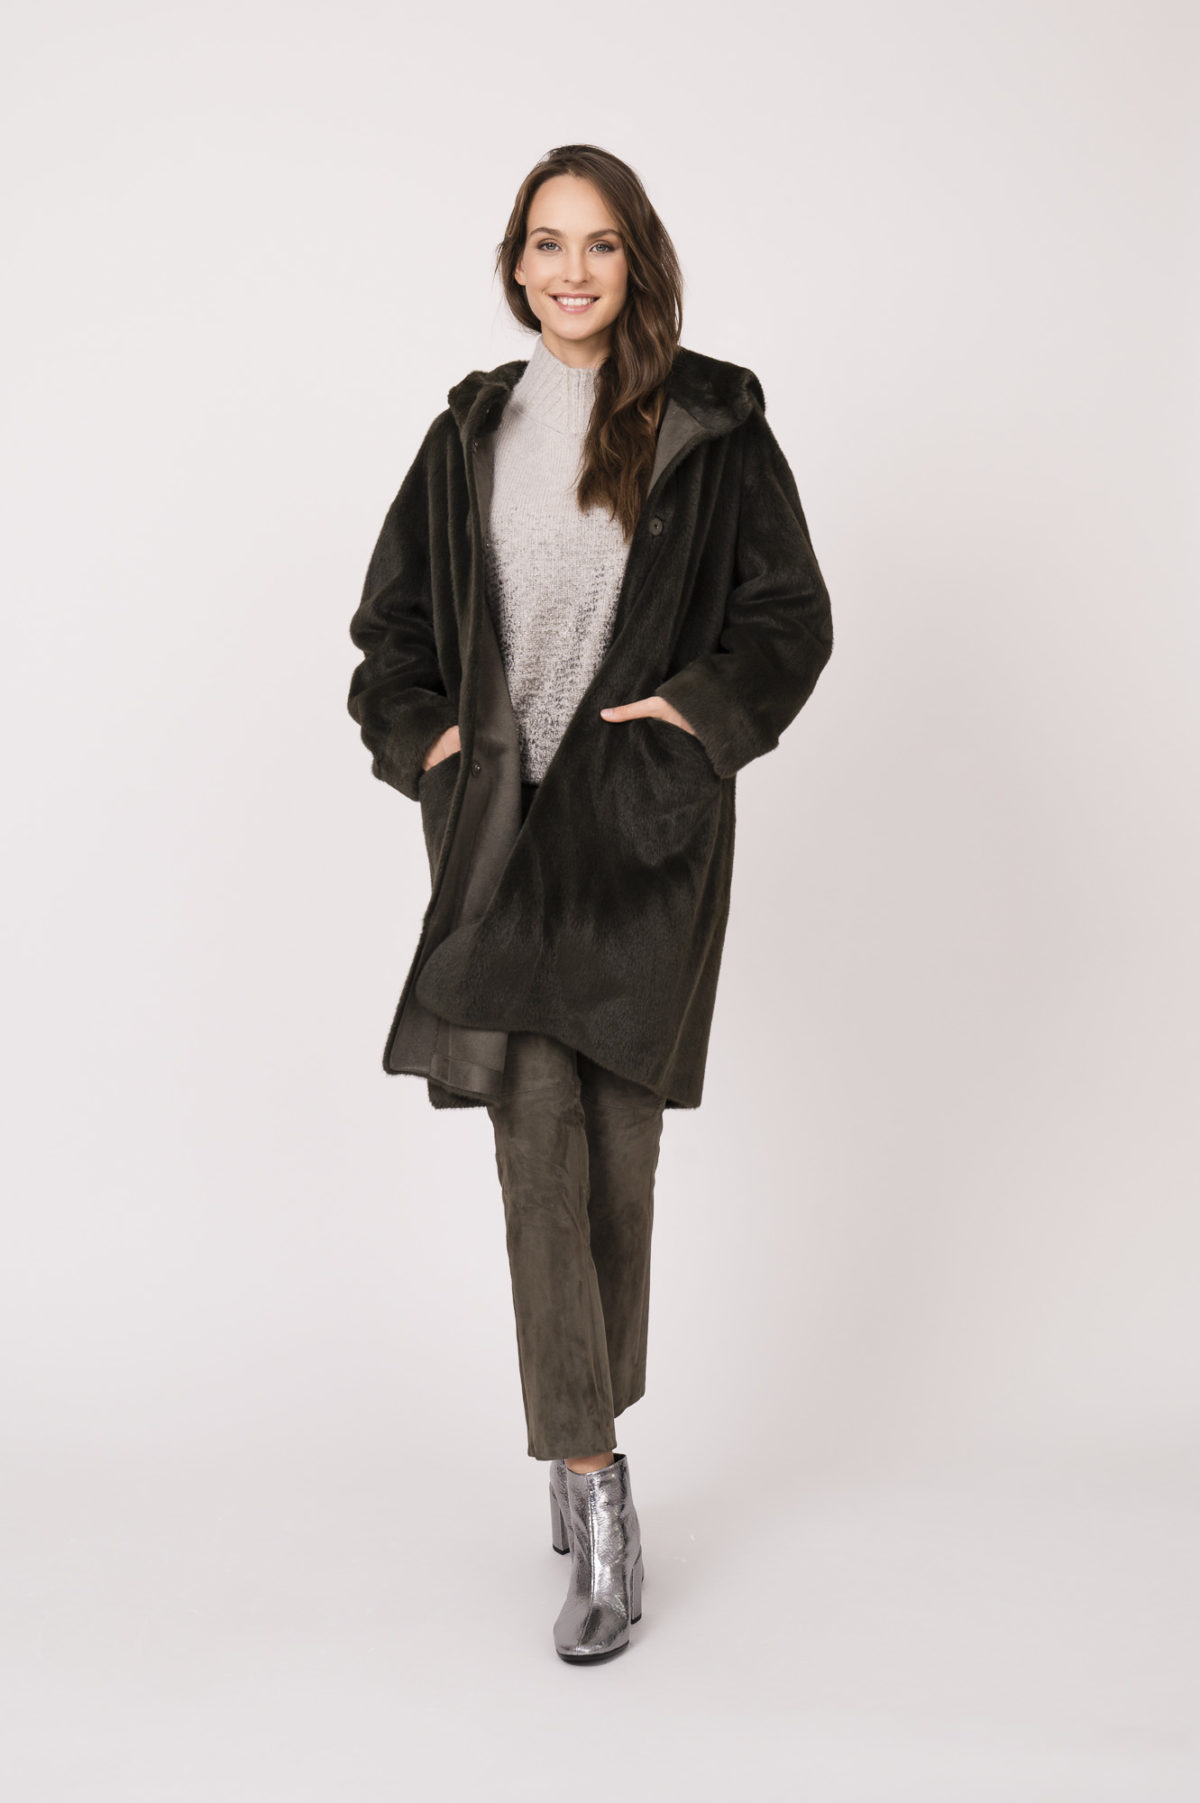 Mantel der Marke Betta Corradi, Pullover, Bluse und Lederhose der Marke Luisa Cerano